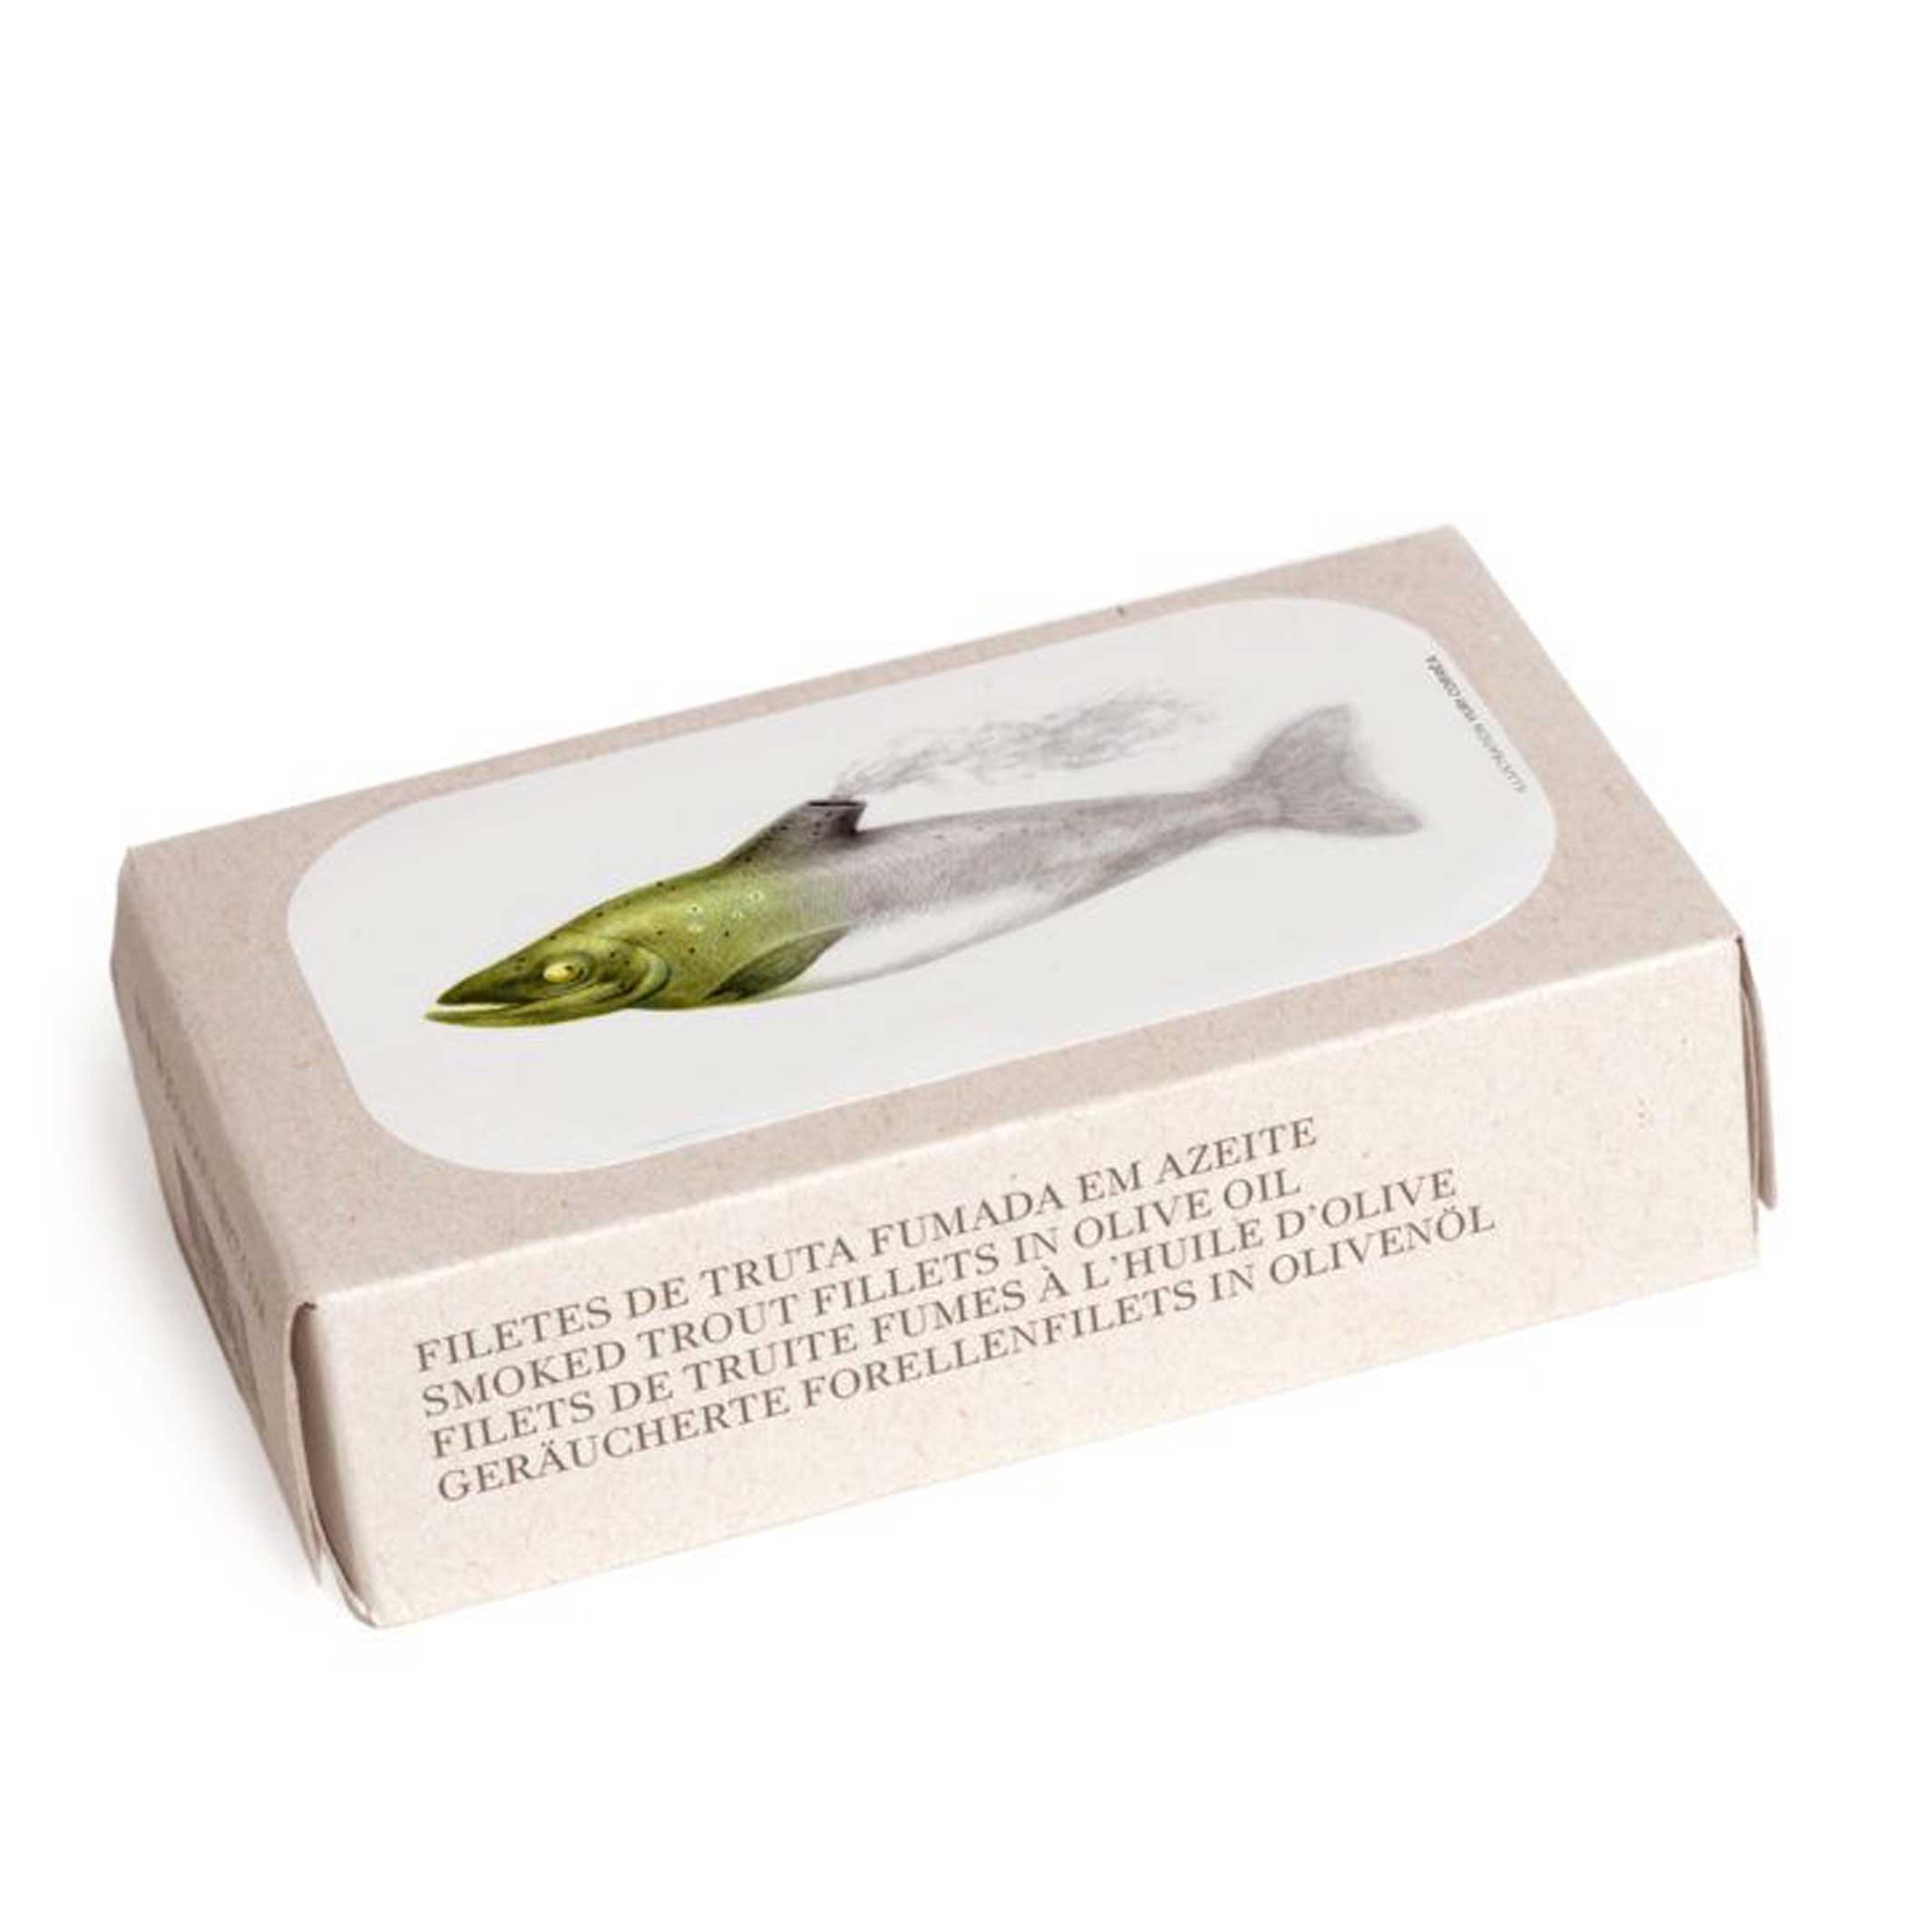 FILETS DE TRUITE Fumés à l'huile d'olive | Épicerie fine CONSERVE DE POISSON | 90gr | José Gourmet